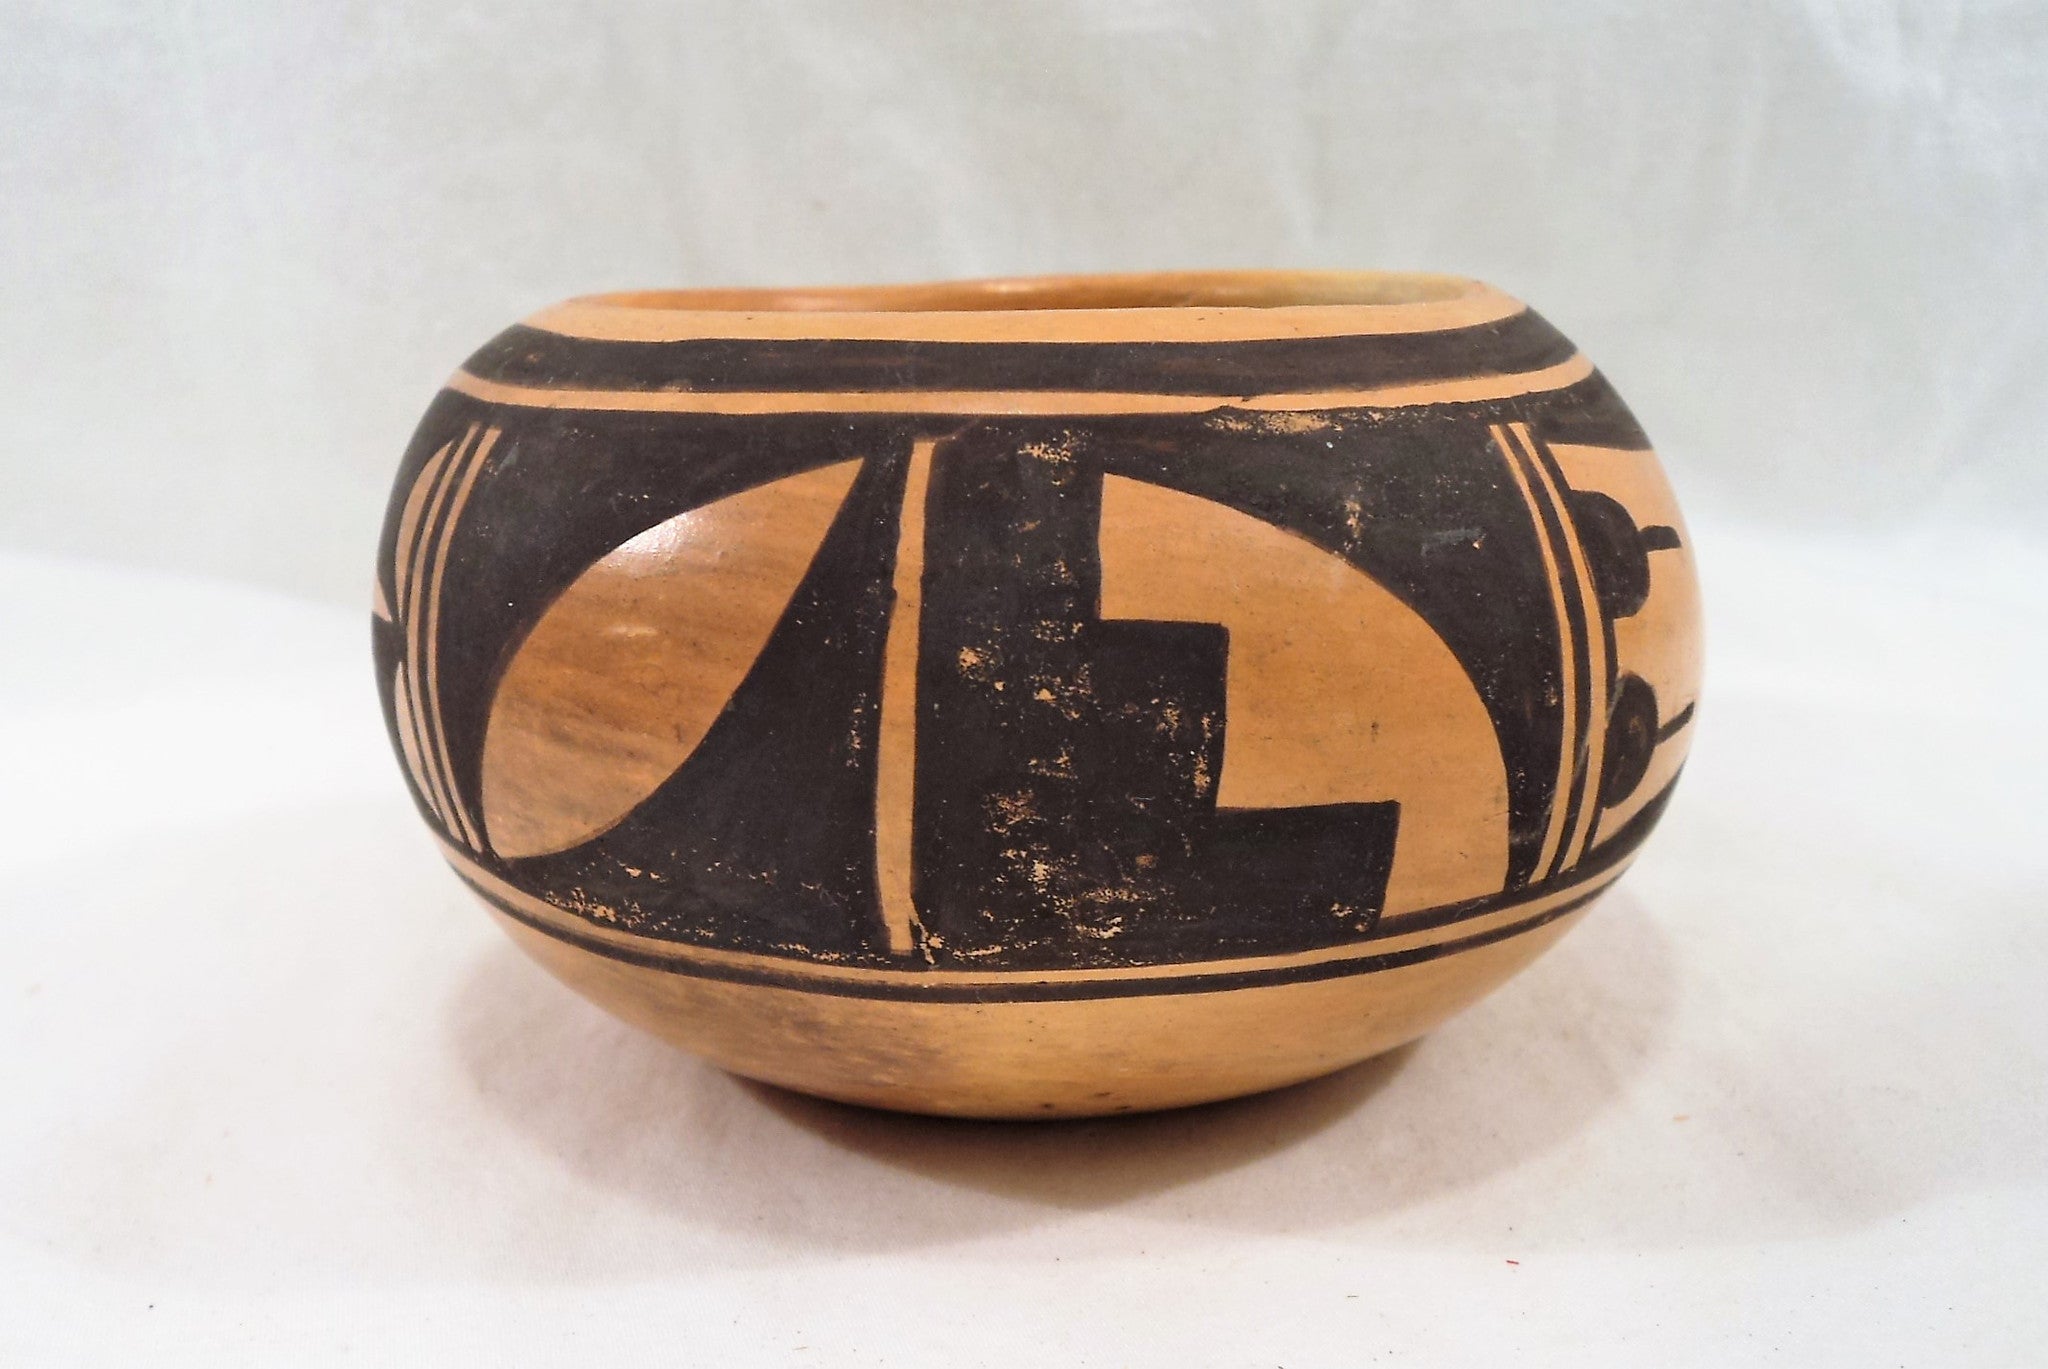 Small Hopi Pottery Bowl